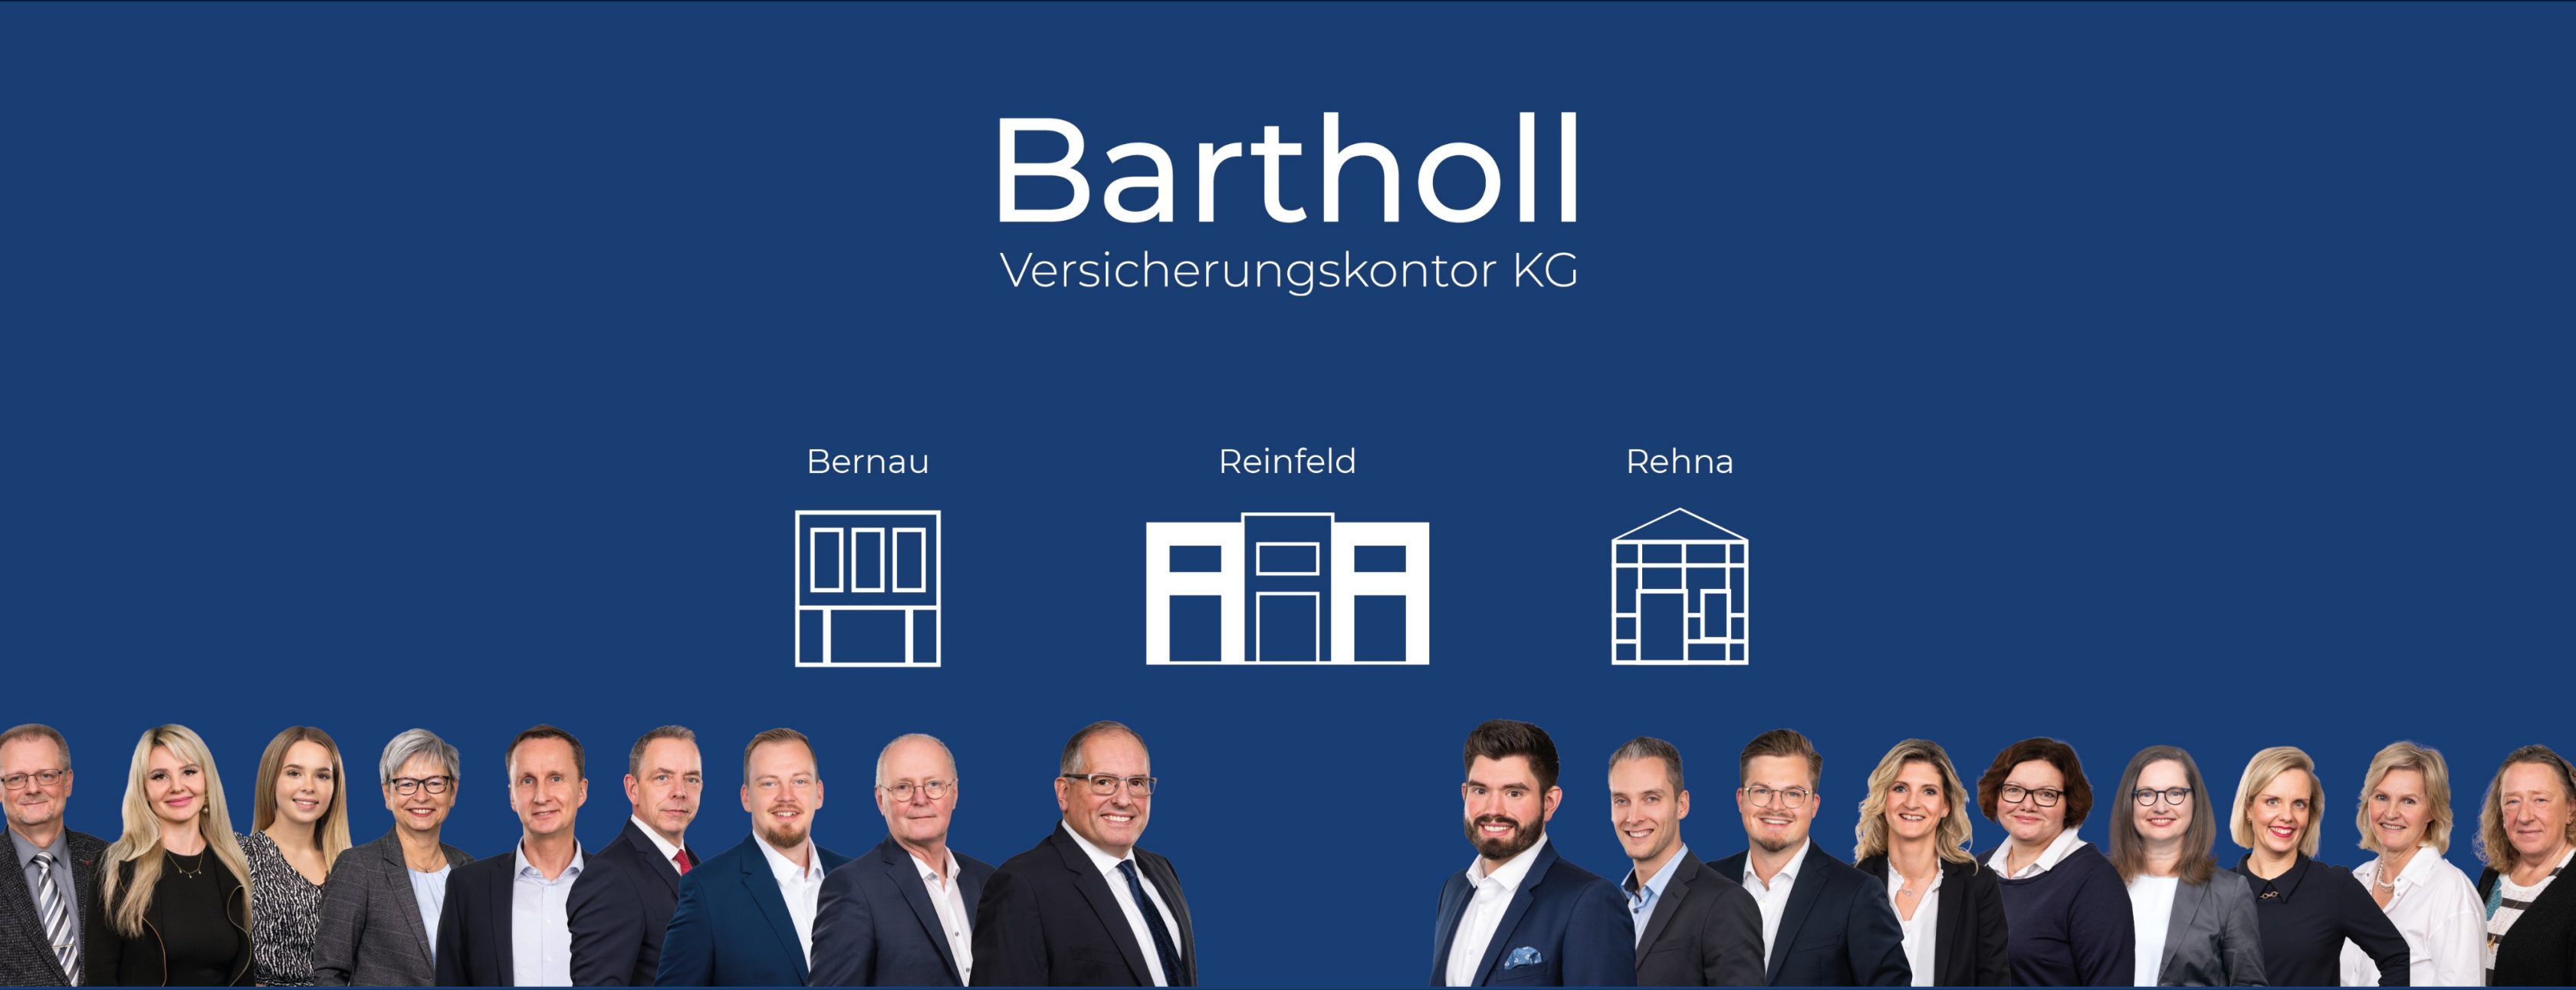 Allianz Versicherung Bartholl Versicherungskontor KG Reinfeld Holstein - Header Bartholl Firma